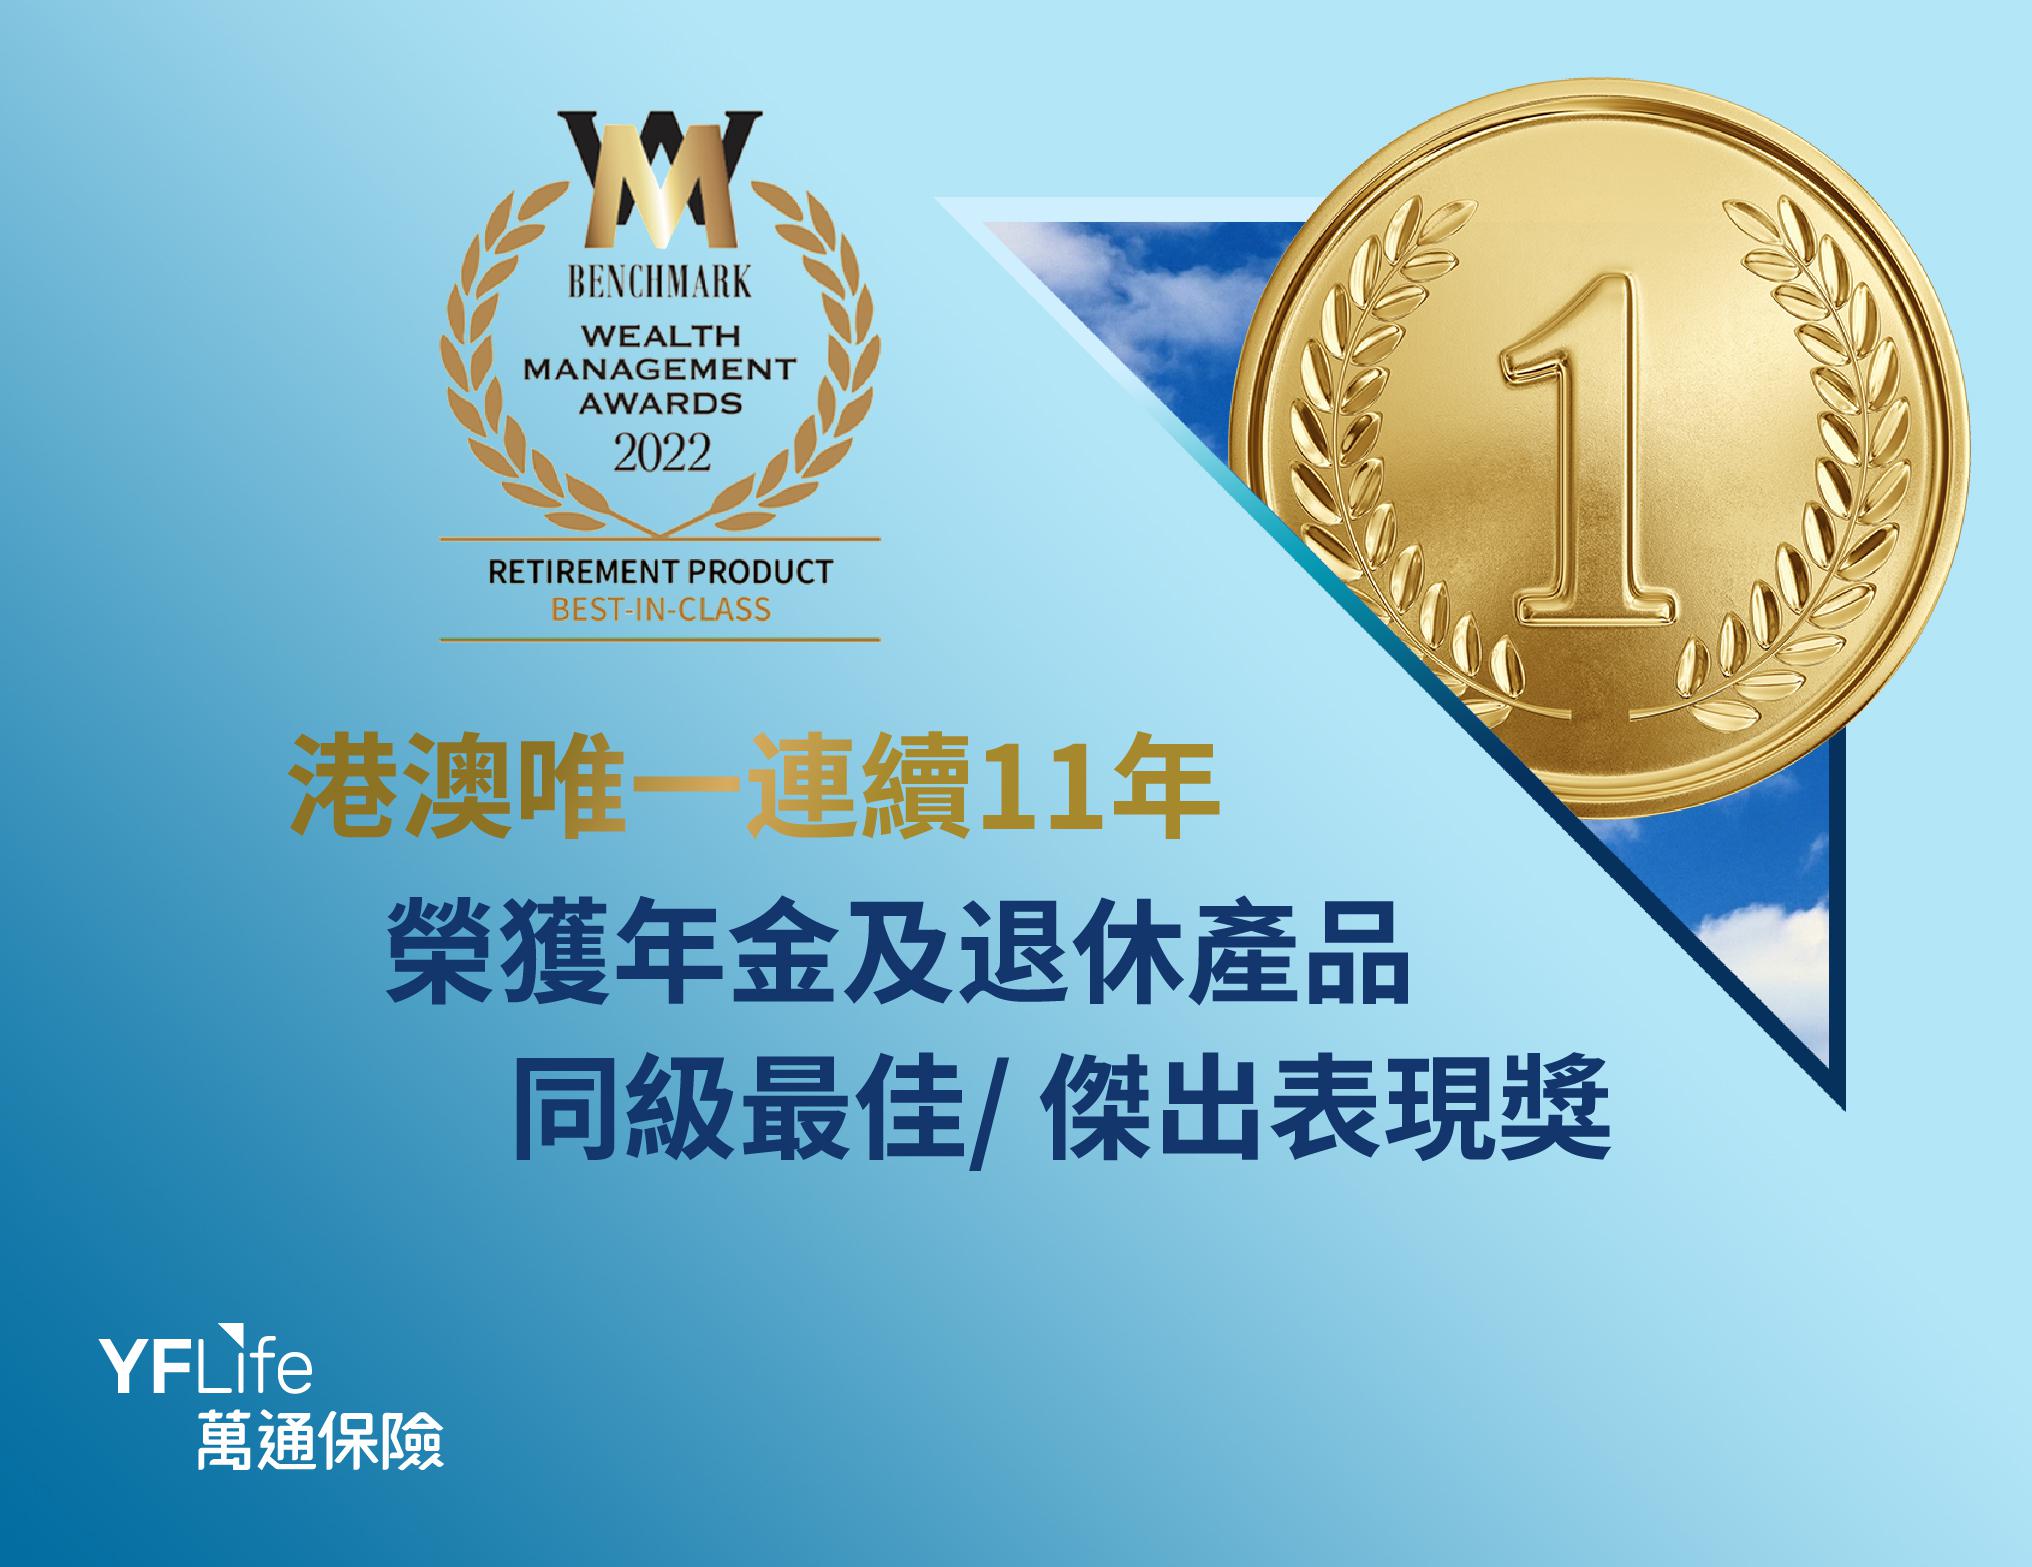 萬通保險連續11年榮獲《指標》「財富管理大獎」年金／退休產品獎項佳績。